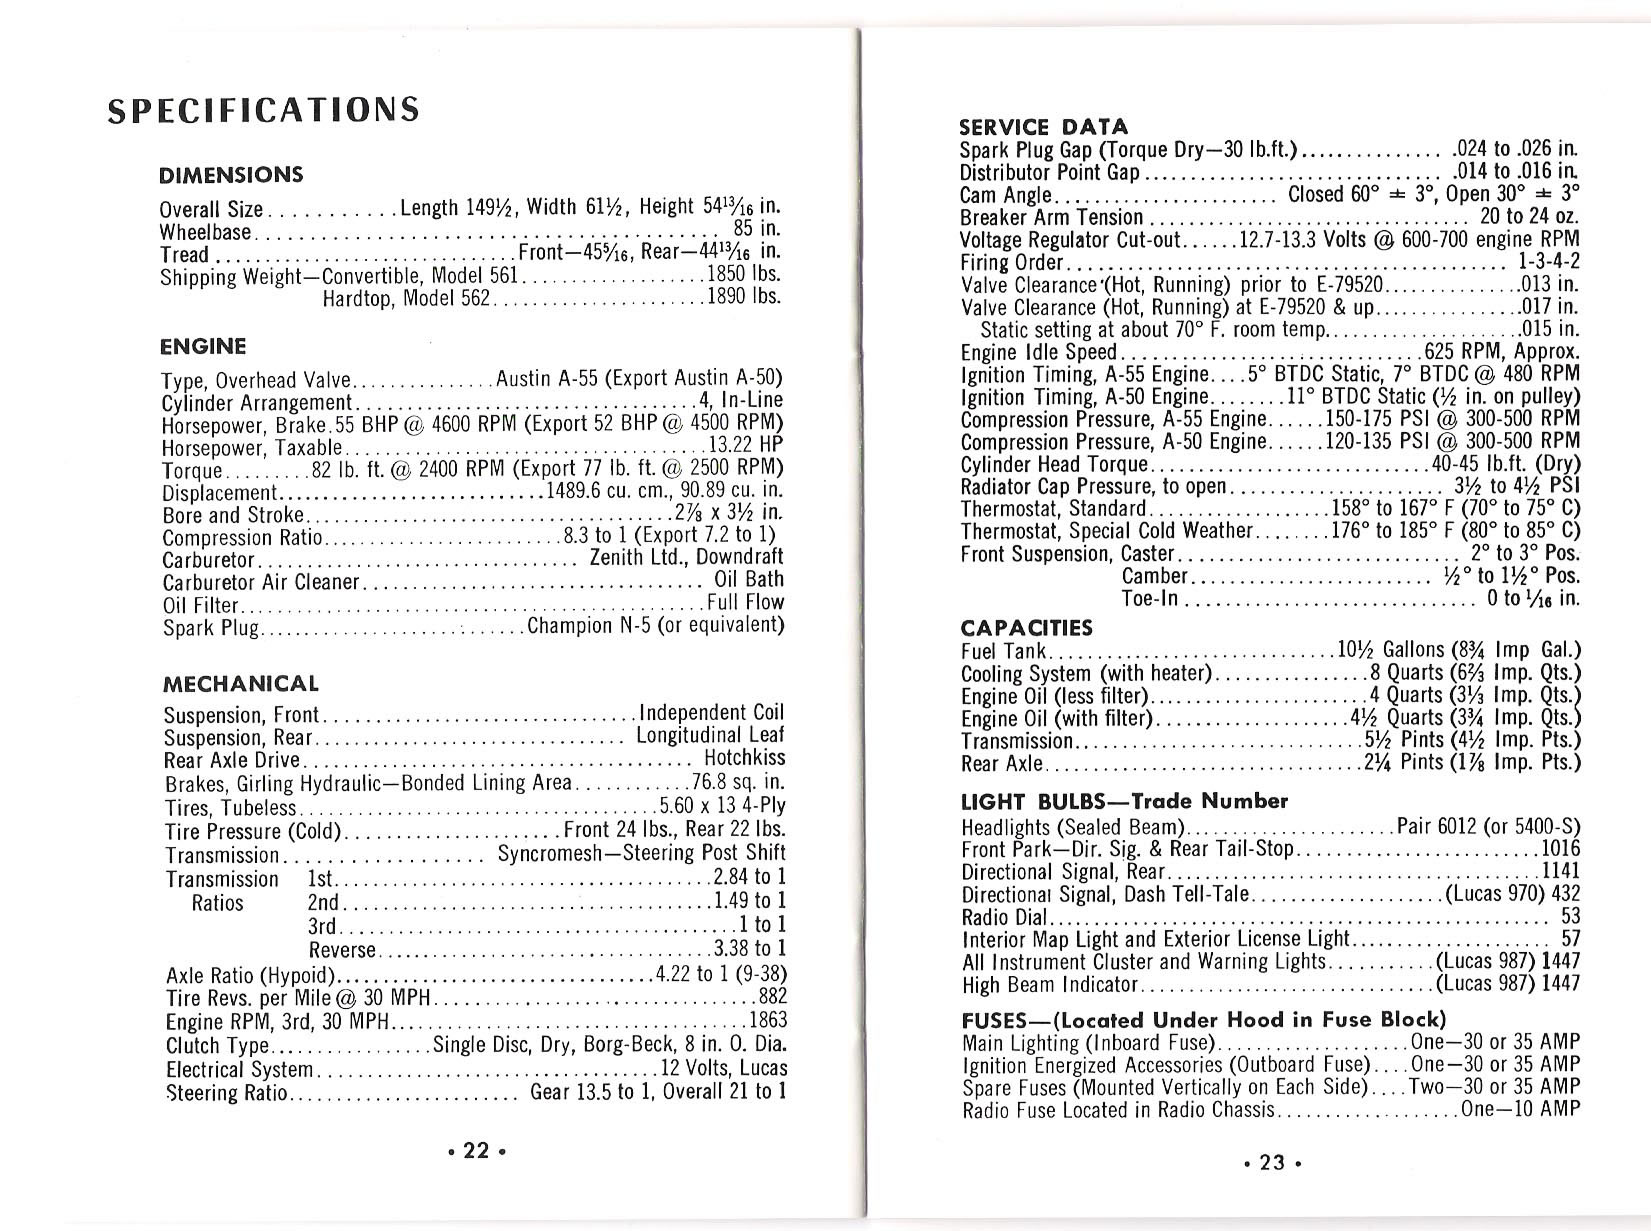 1957 Metropolitan Owners Manual-22-23